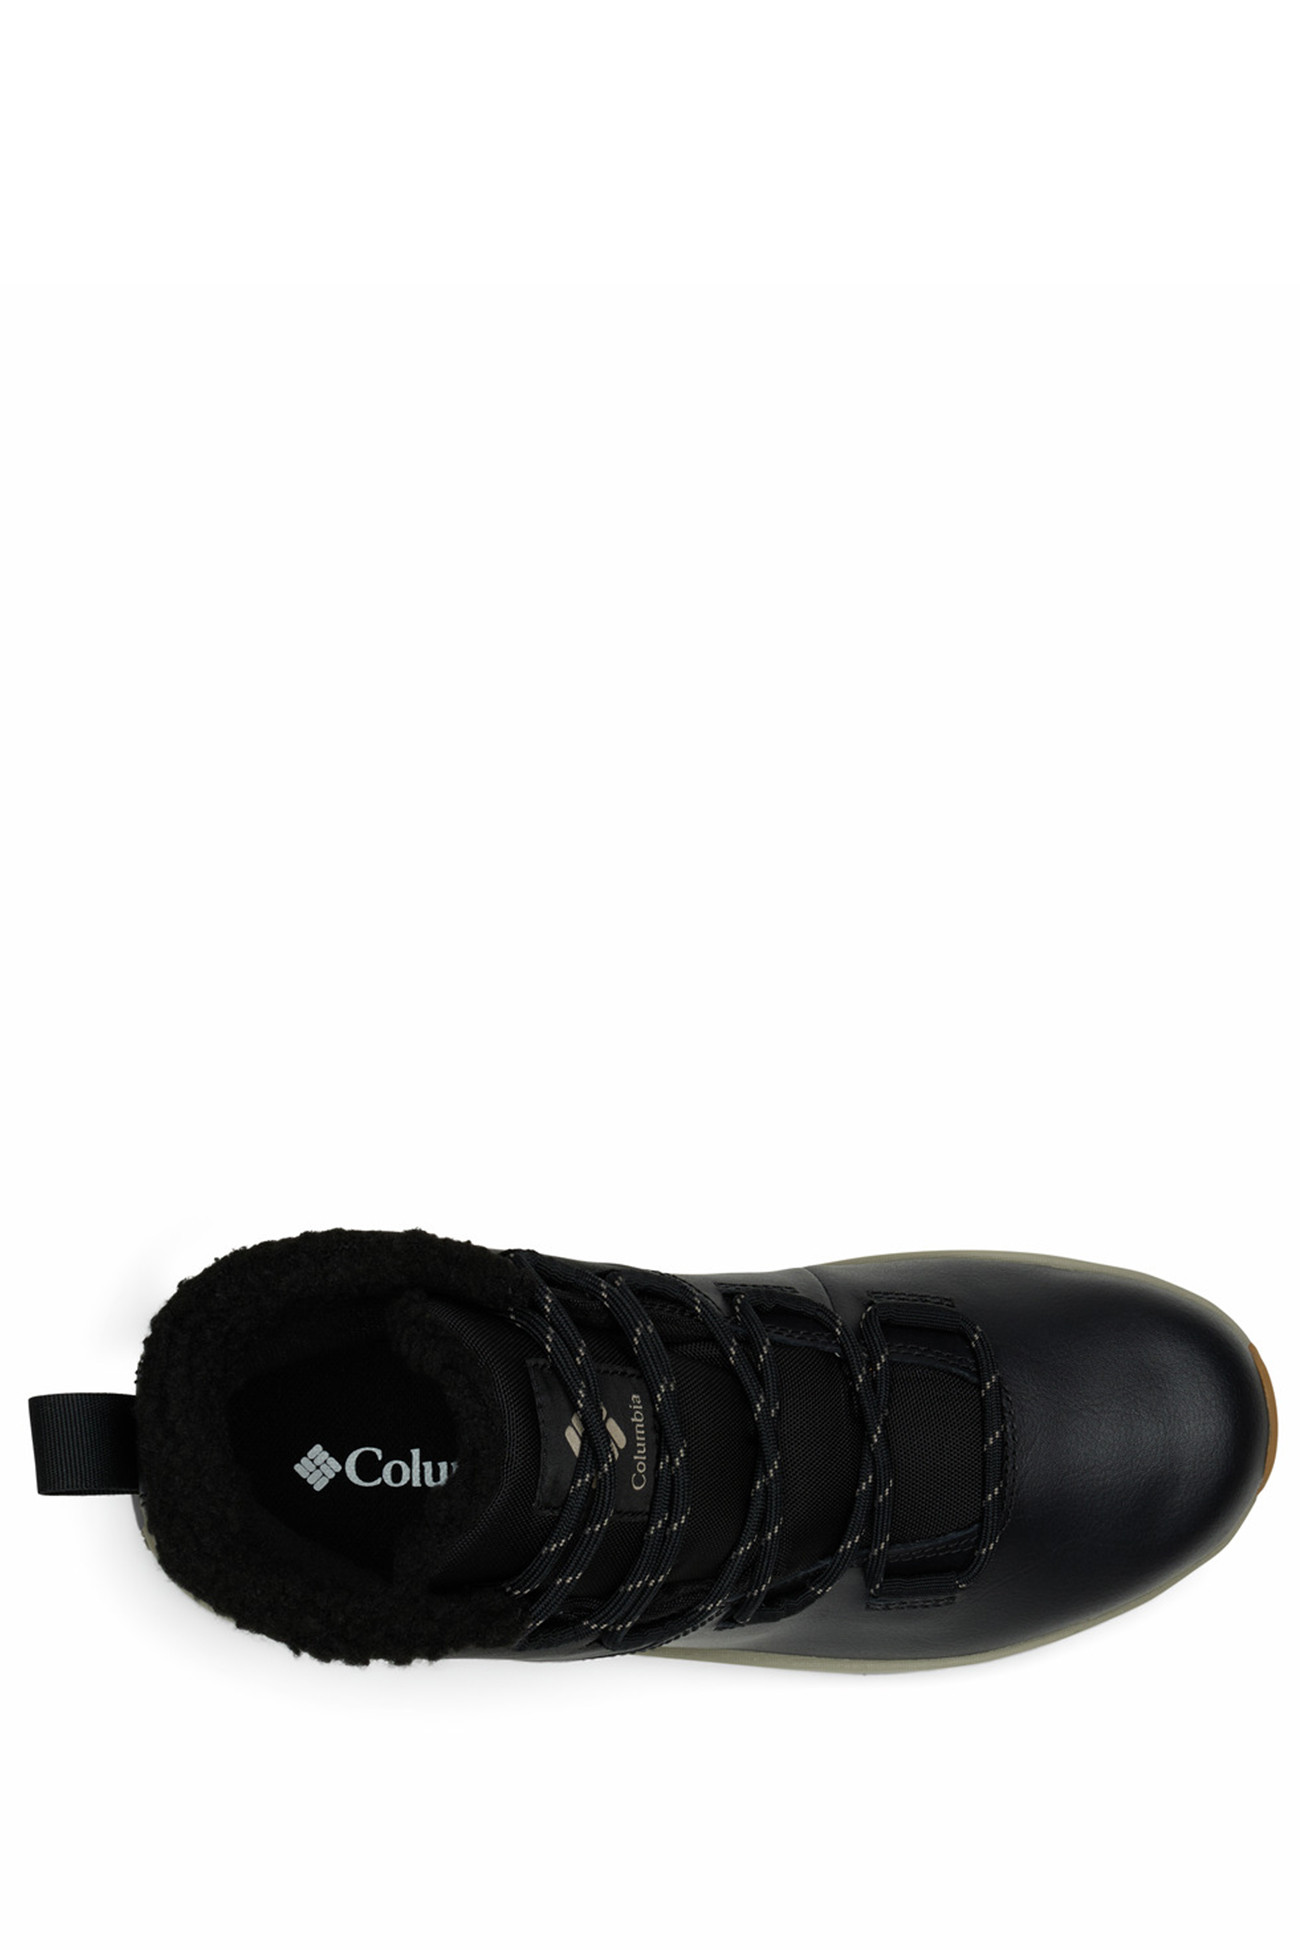 Ботинки женские Columbia MORITZA™ SHORTY черные 2005051-010 изображение 6